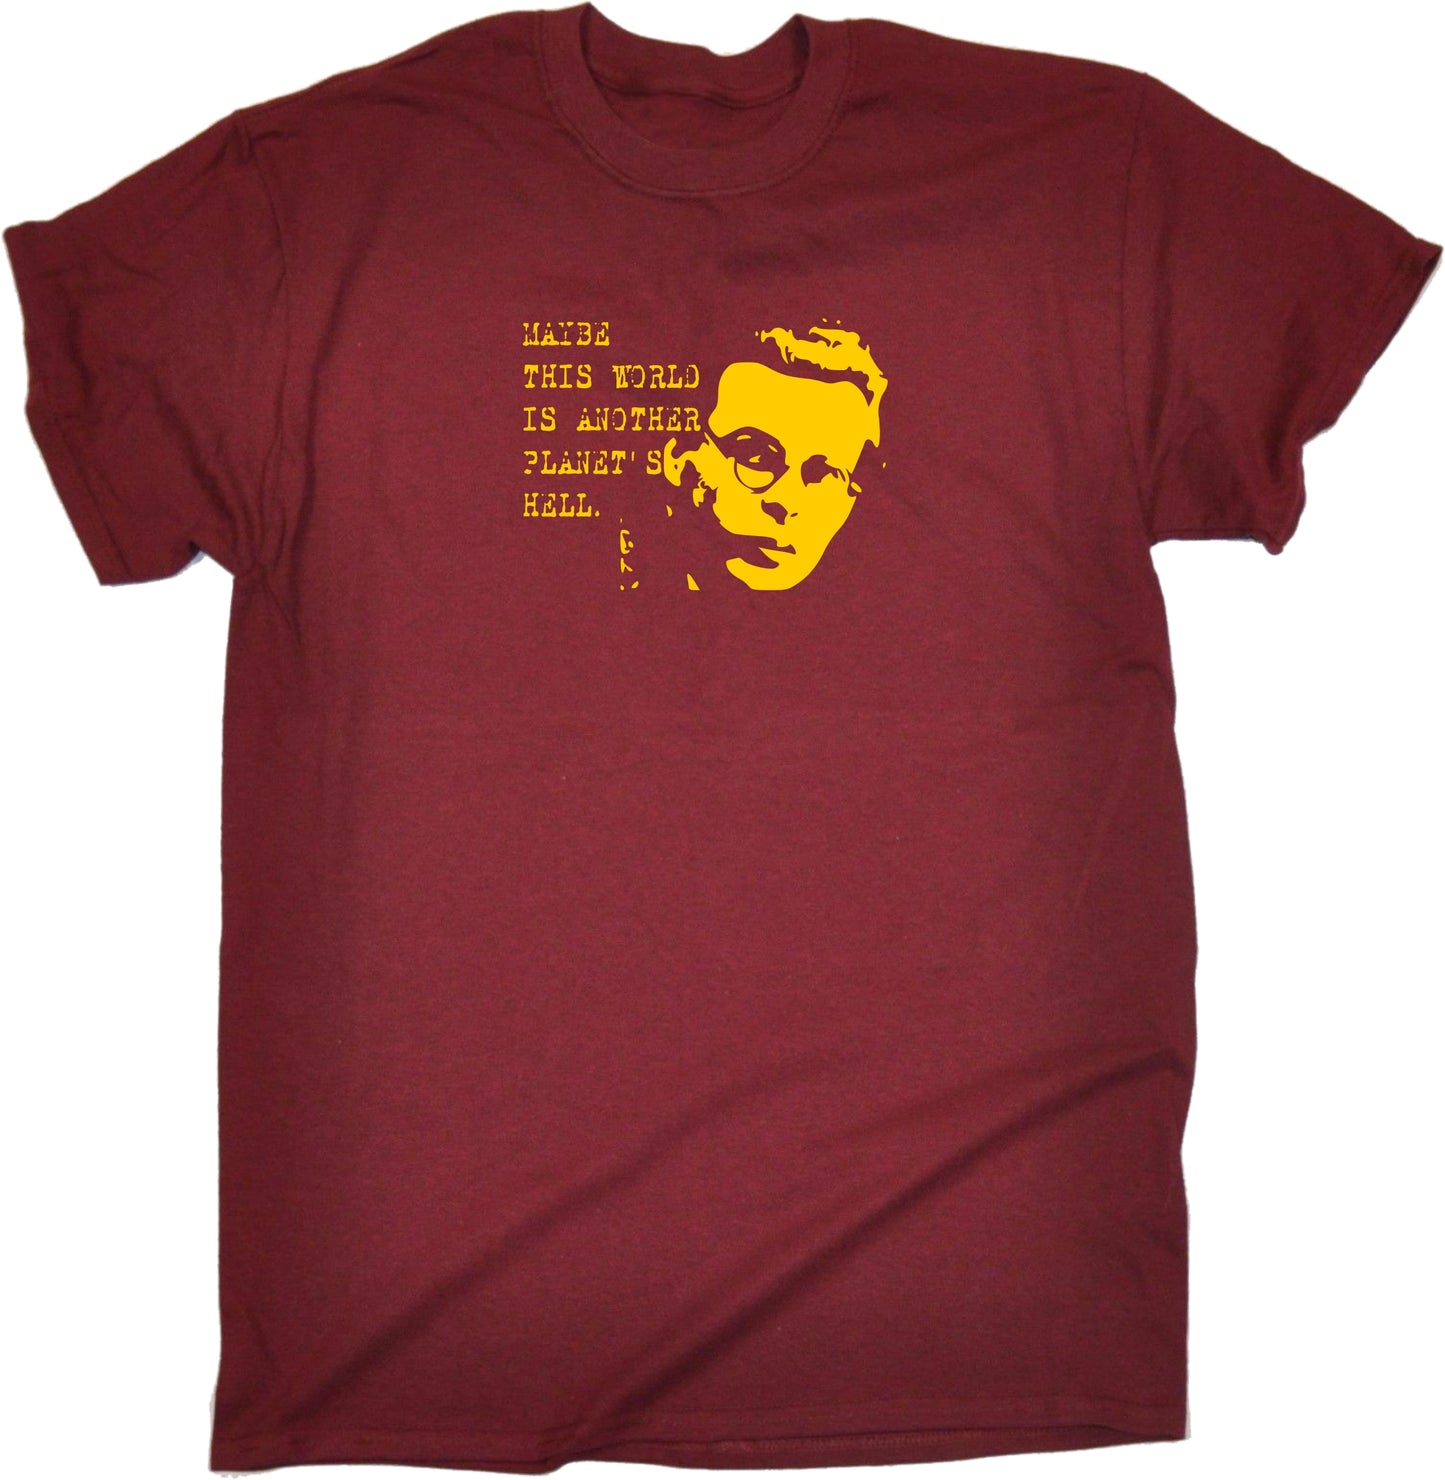 Aldous Huxley Quote T-Shirt - Philosophy, Literature, Brave New World, Various Colours